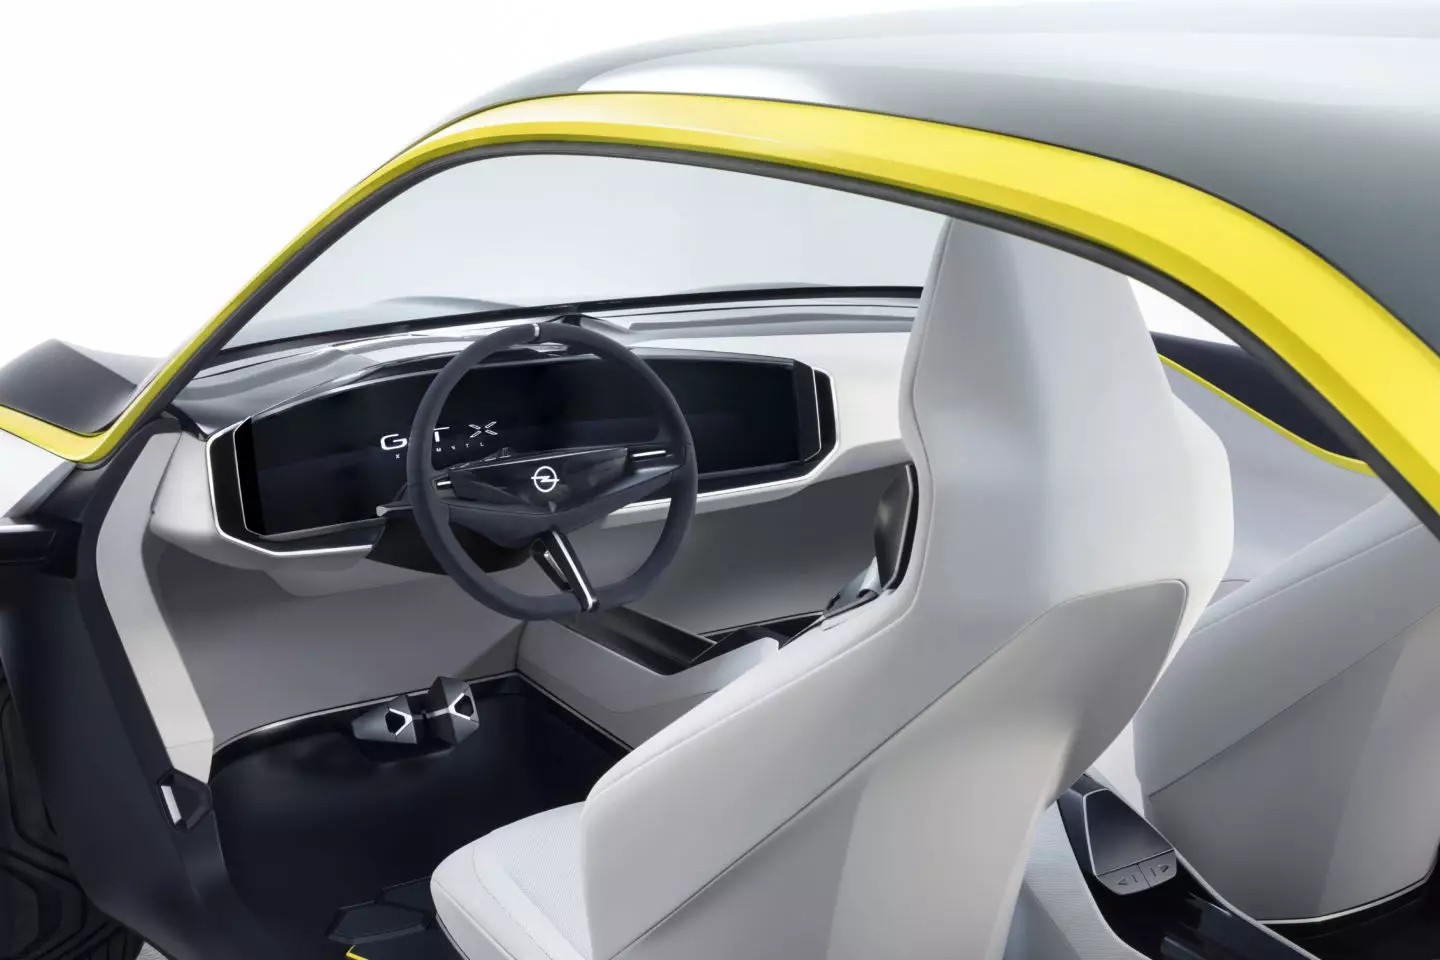 2018 Opel GT X туршилтын